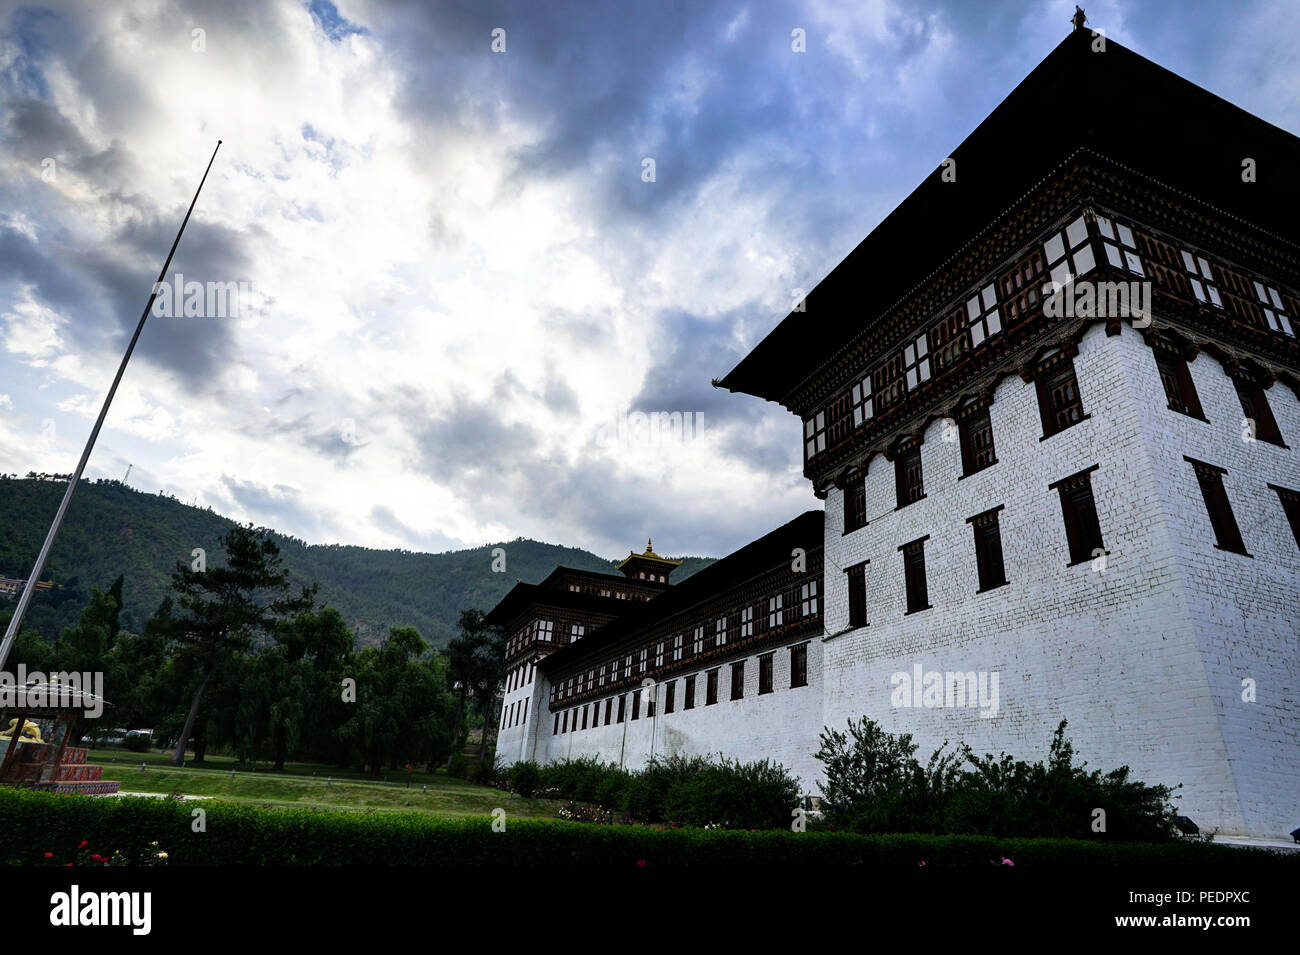 Photo prise au Bhoutan et montrant une culture unique et reiligion. Banque D'Images